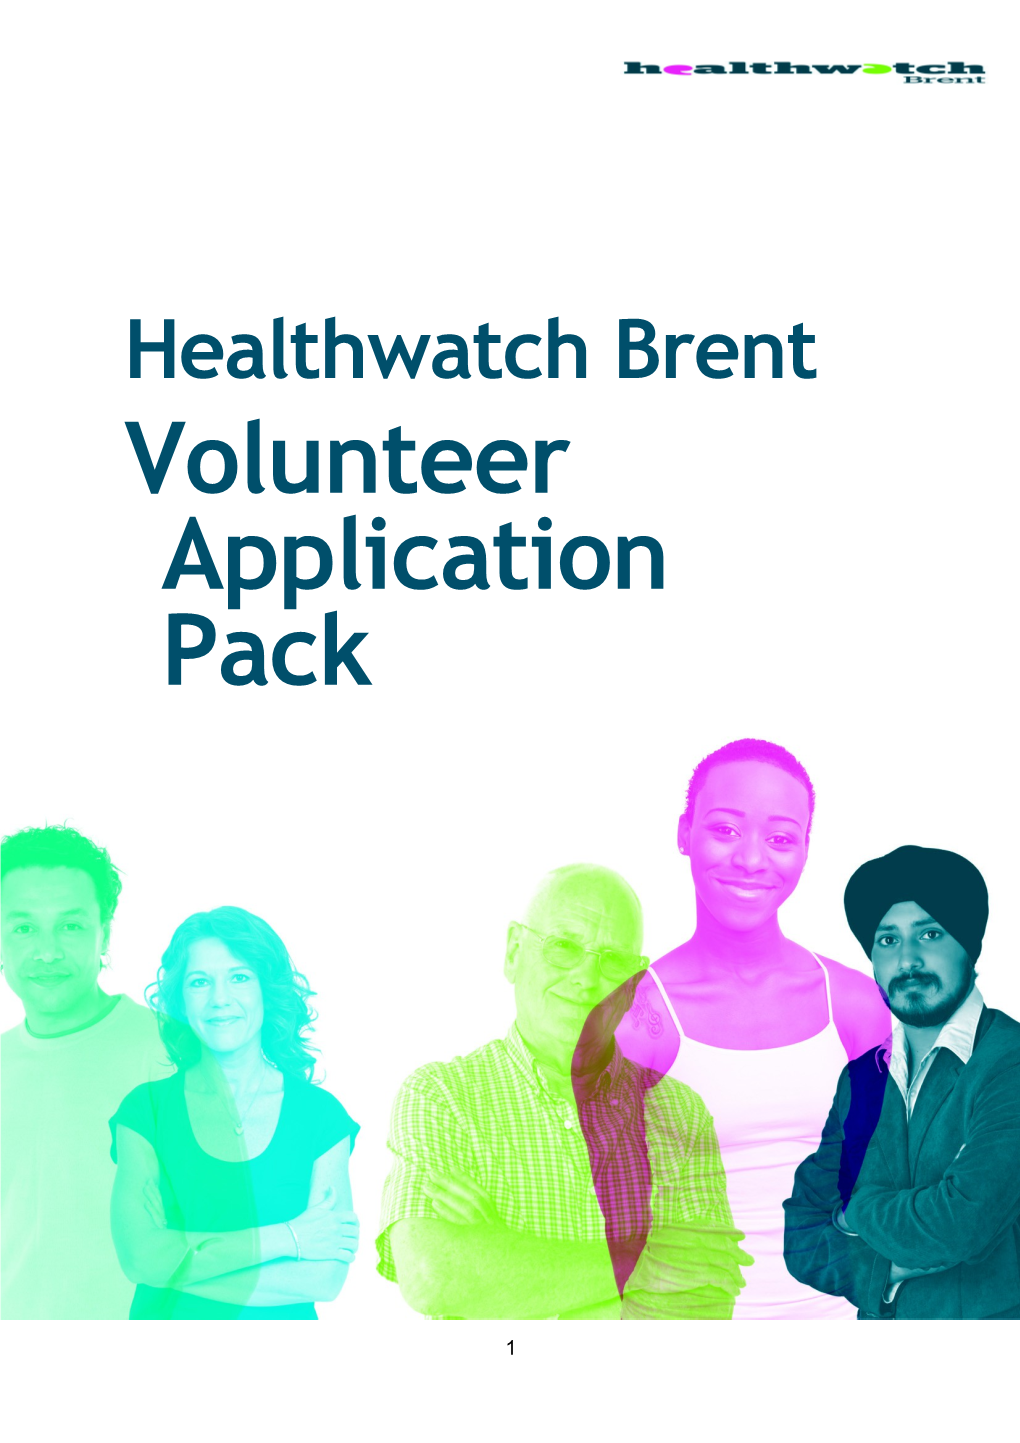 Healthwatch Brent Volunteering Opportunities